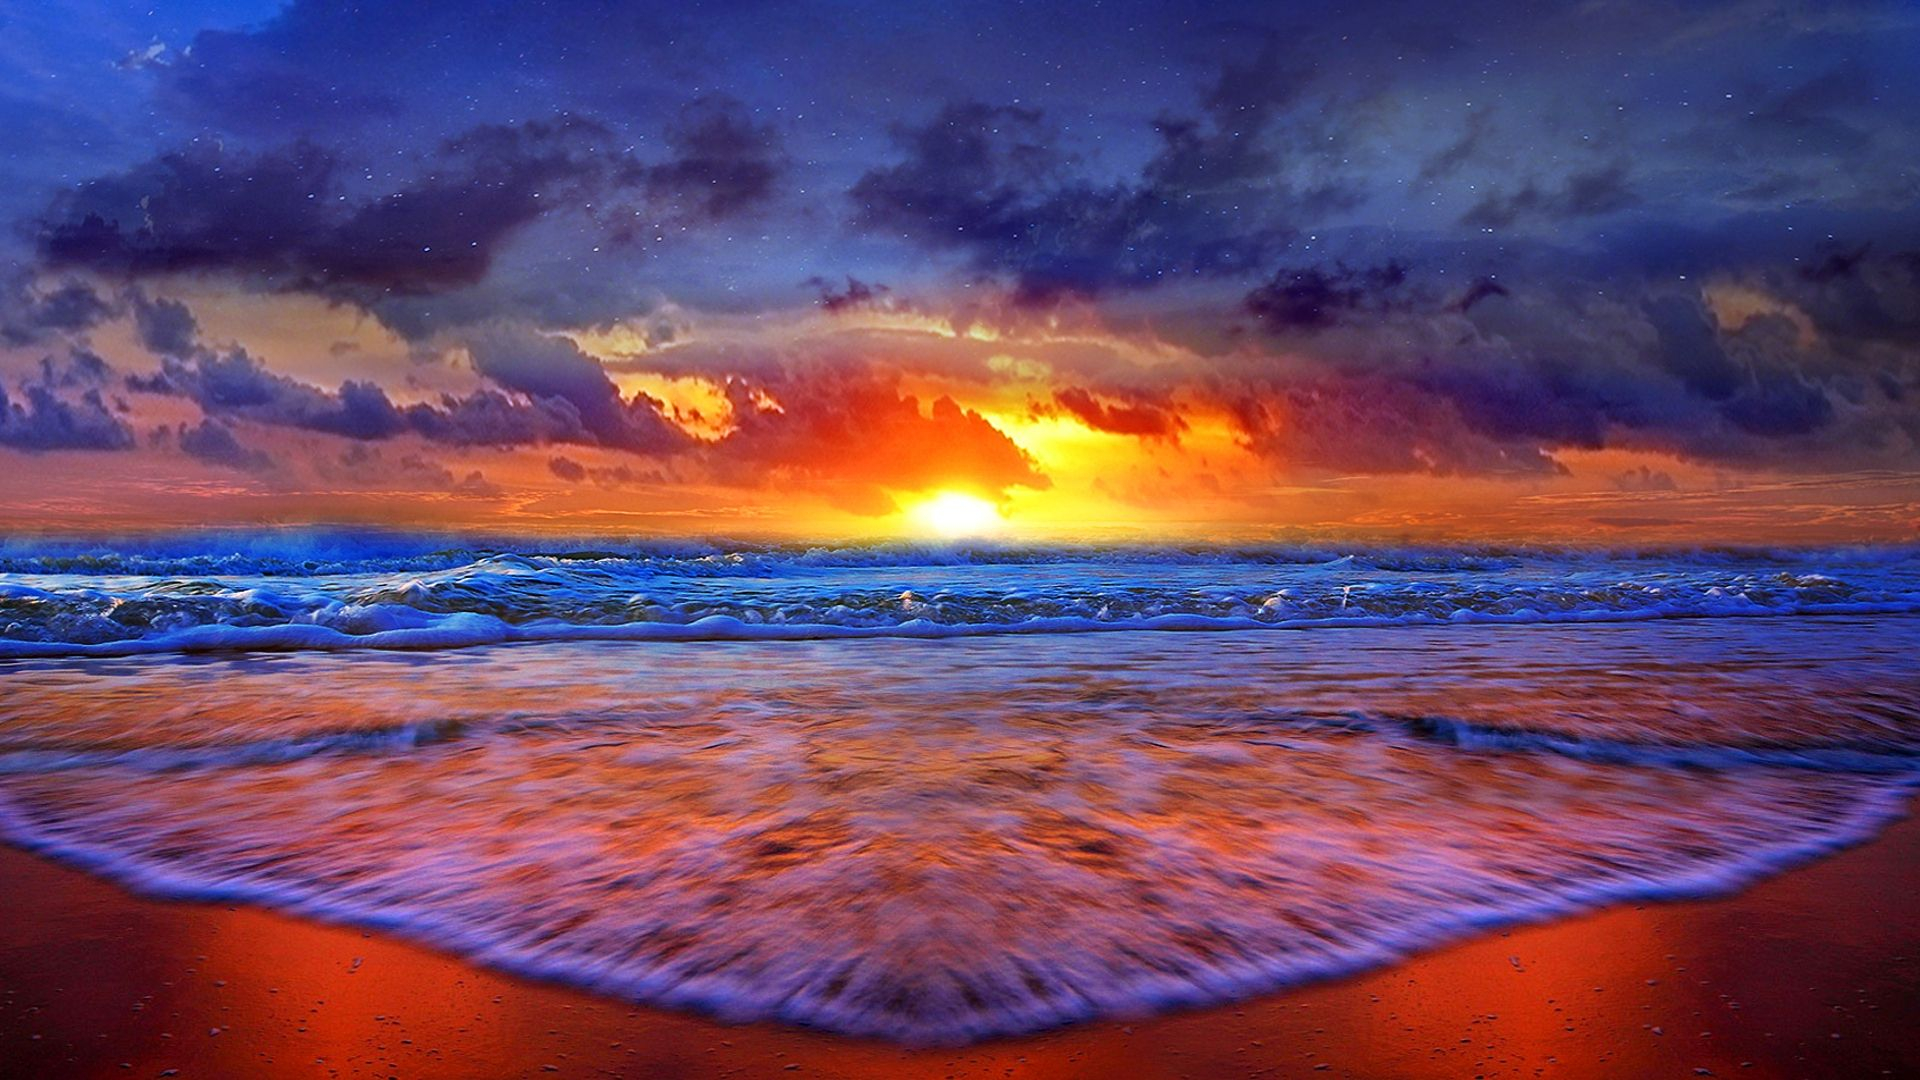 1920x1080 Beach Sunset HD Wallpaper | Beach sunset wallpaper, Sunset background, Beach wallpaper